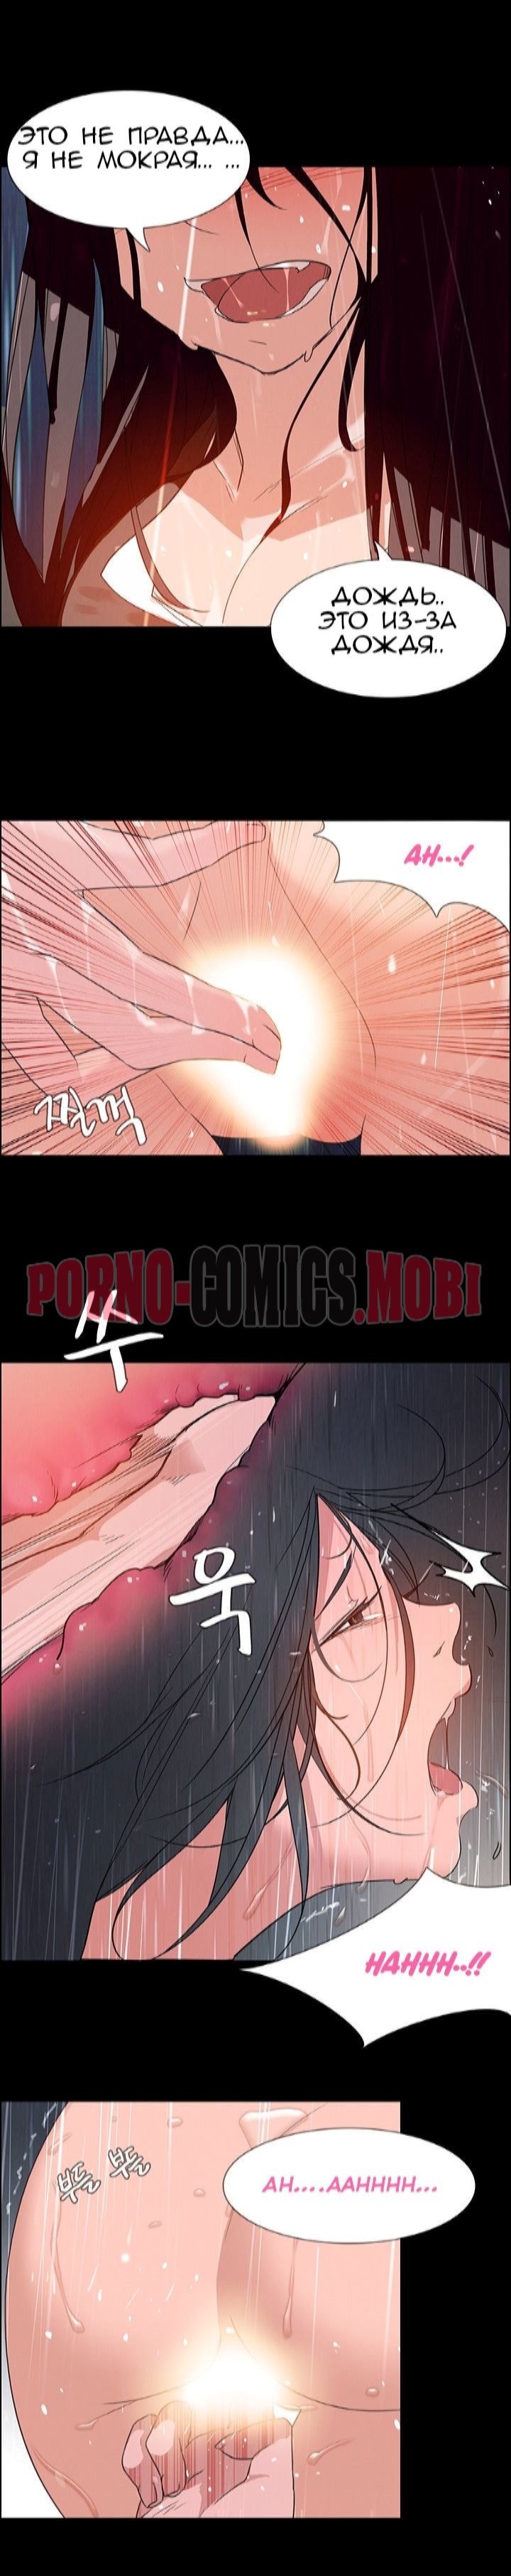 Порно Комикс Занавес от дождя Часть 1-2 смотреть бесплатно онлайн